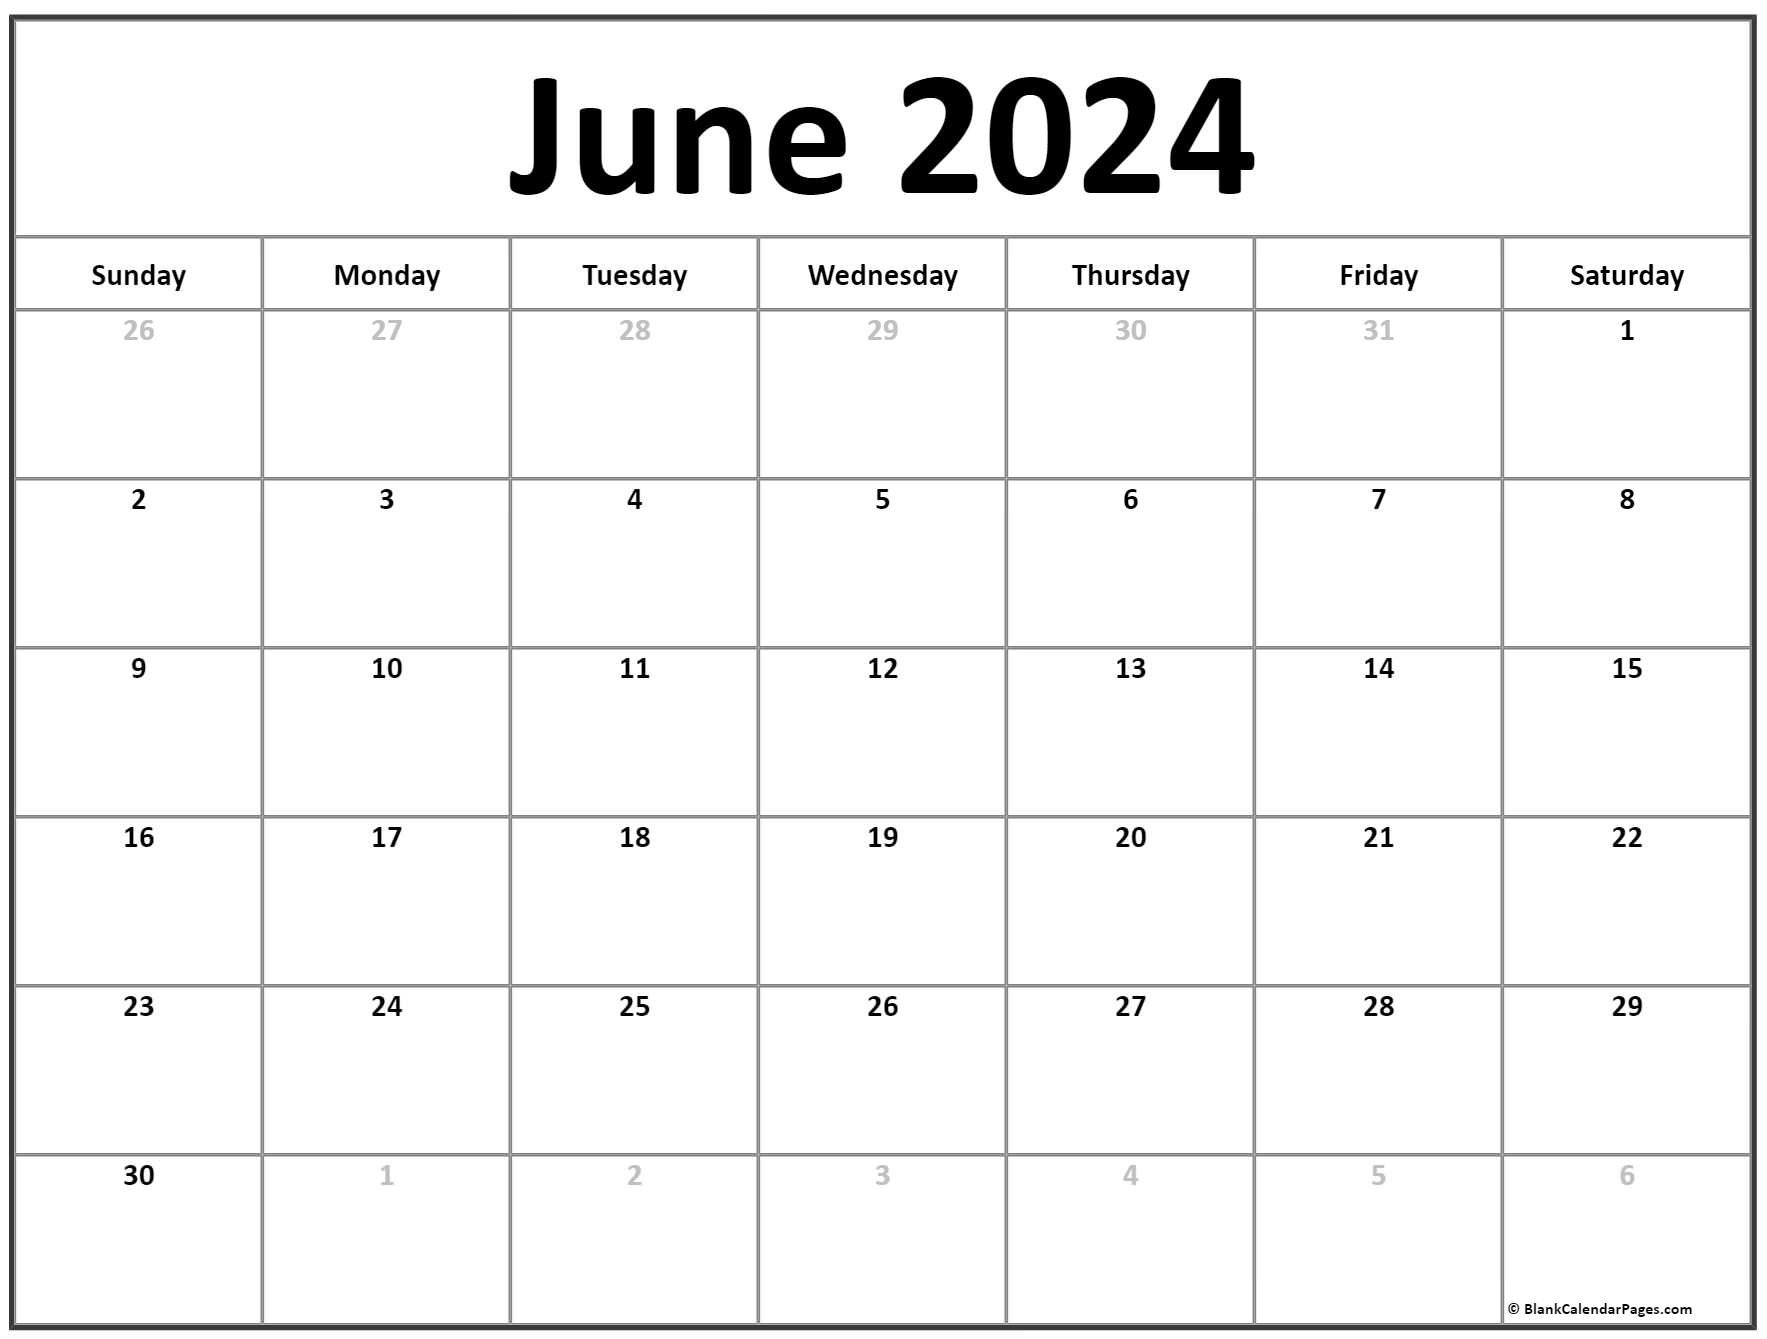 Free June 2024 Calendar Printable - PELAJARAN